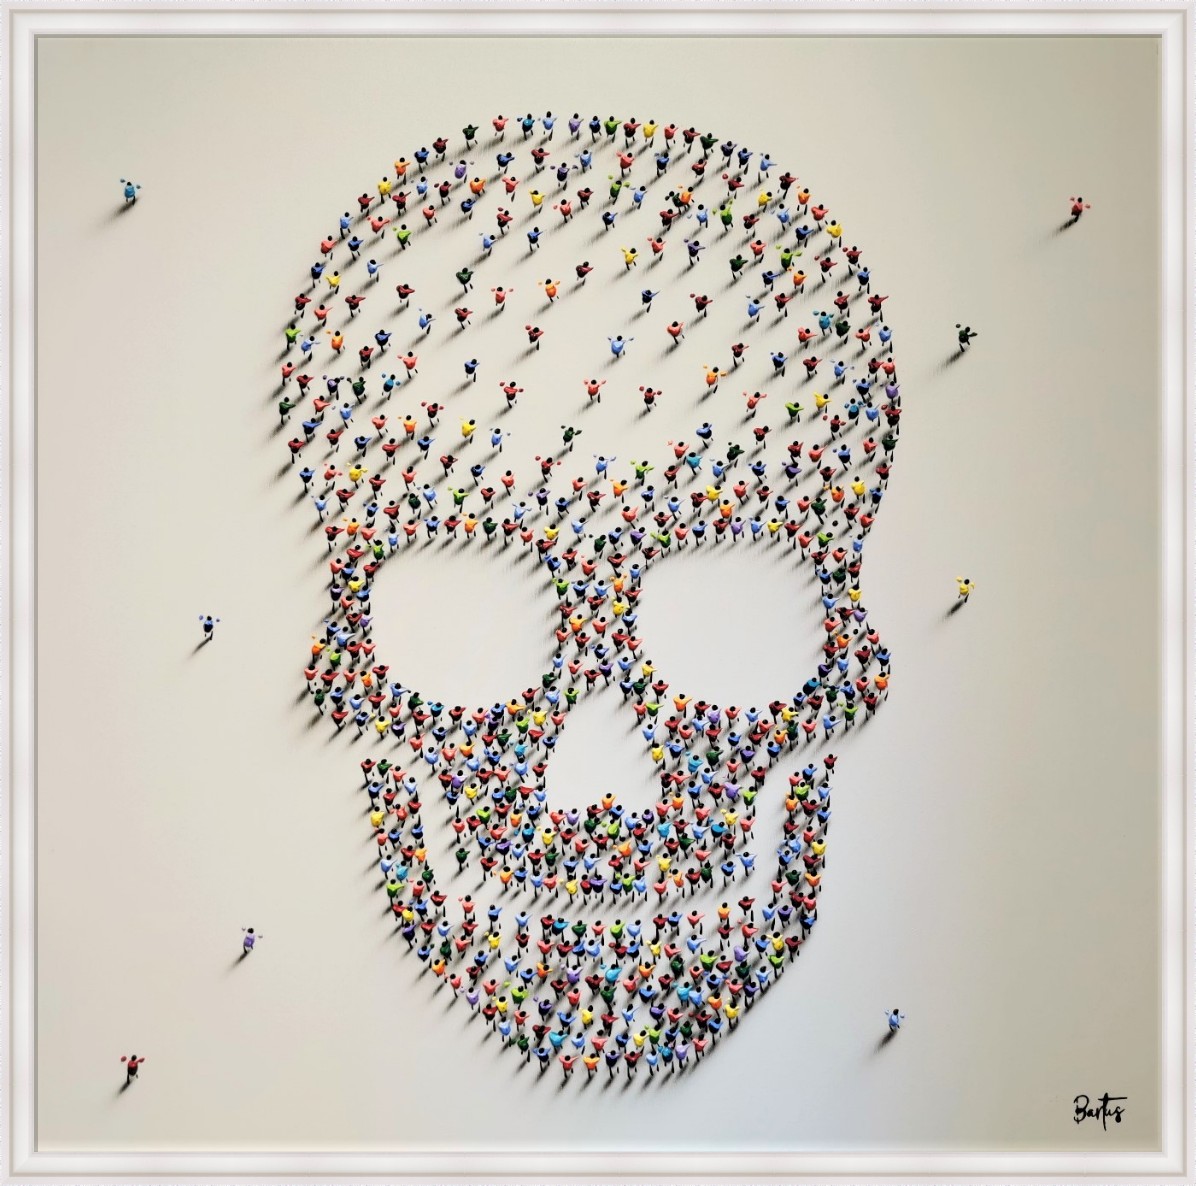 Skull X by Francisco Bartus